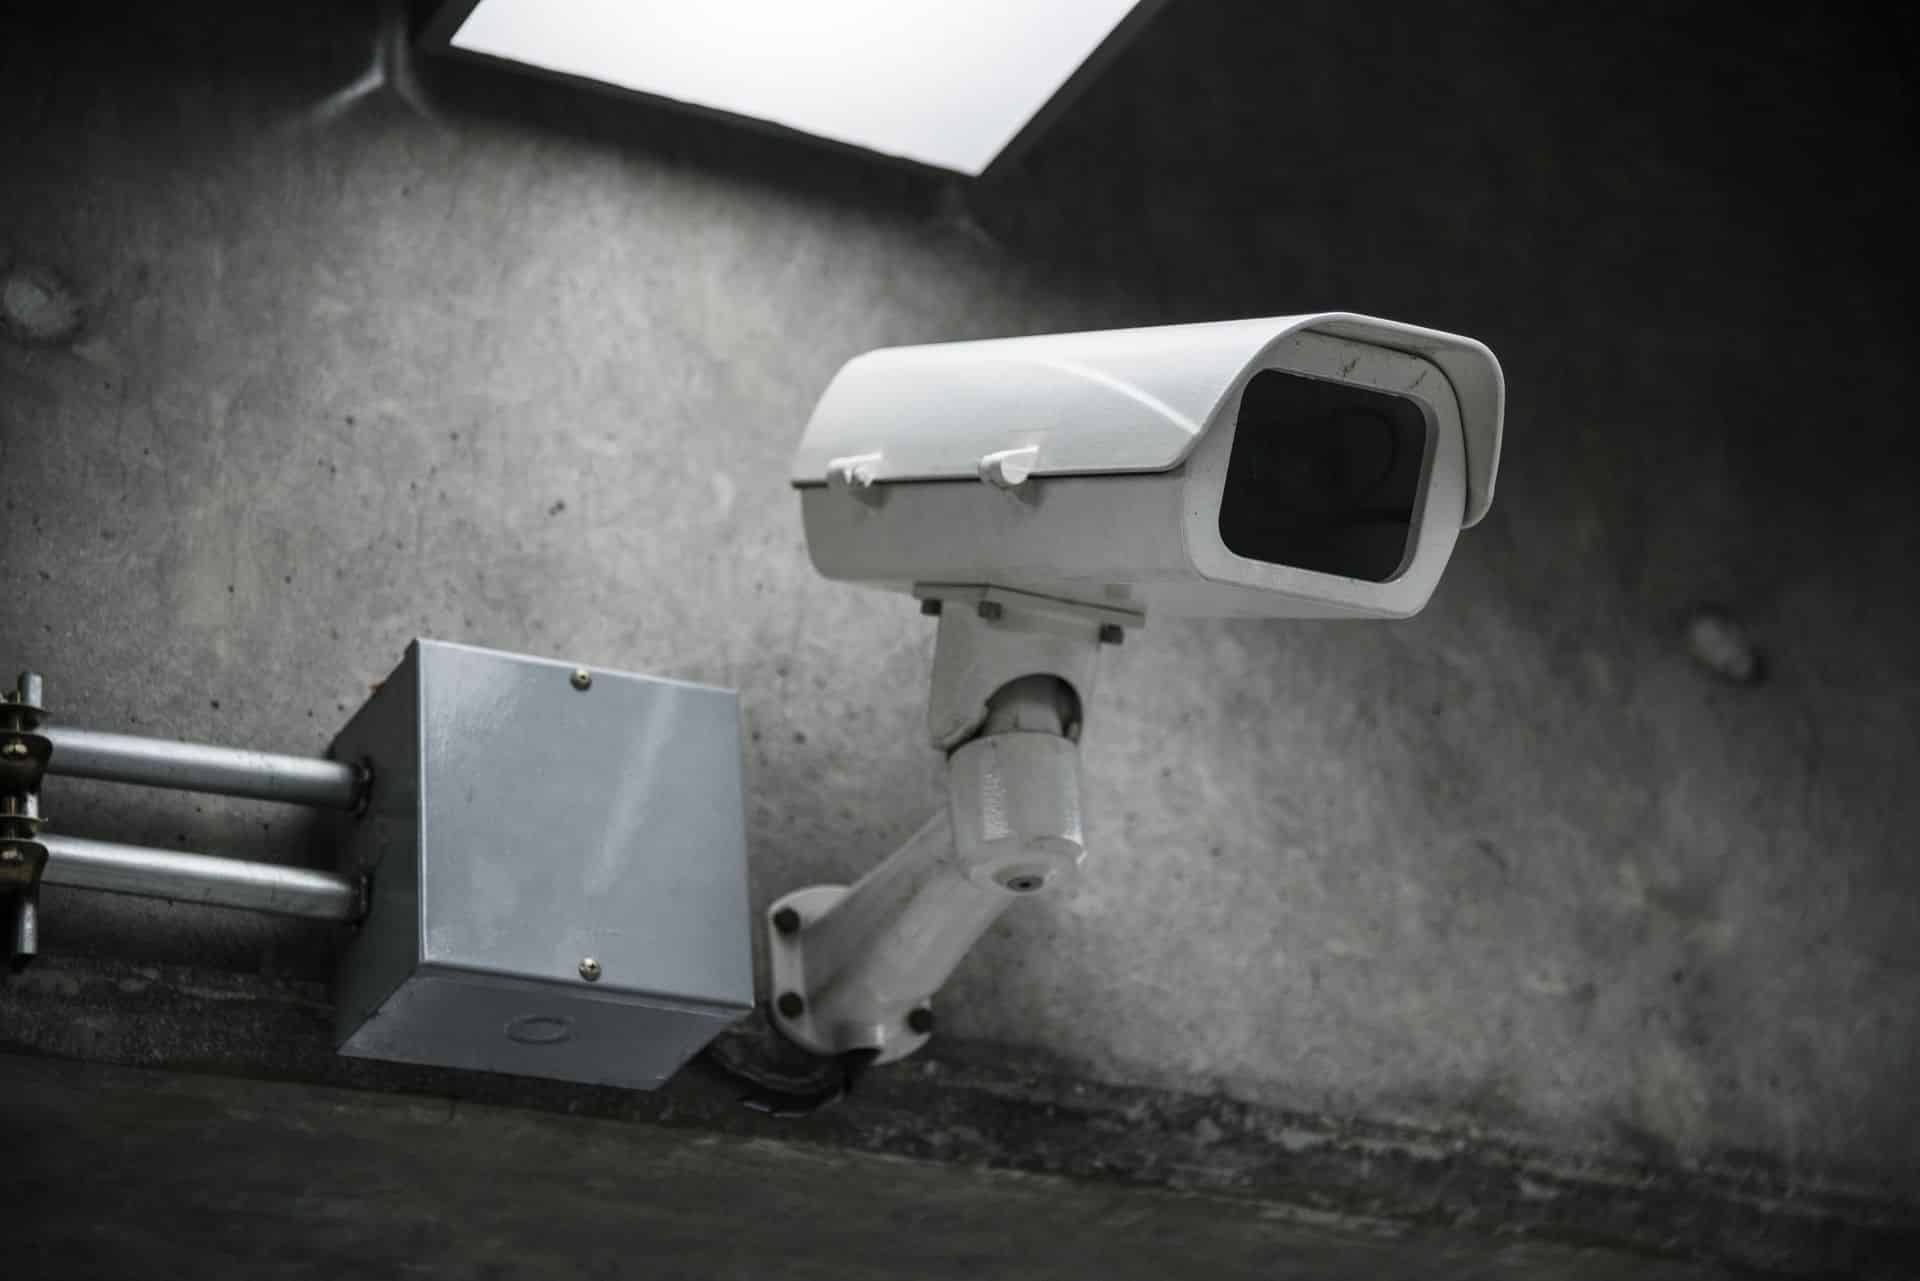 Wall mounted CCTV camera